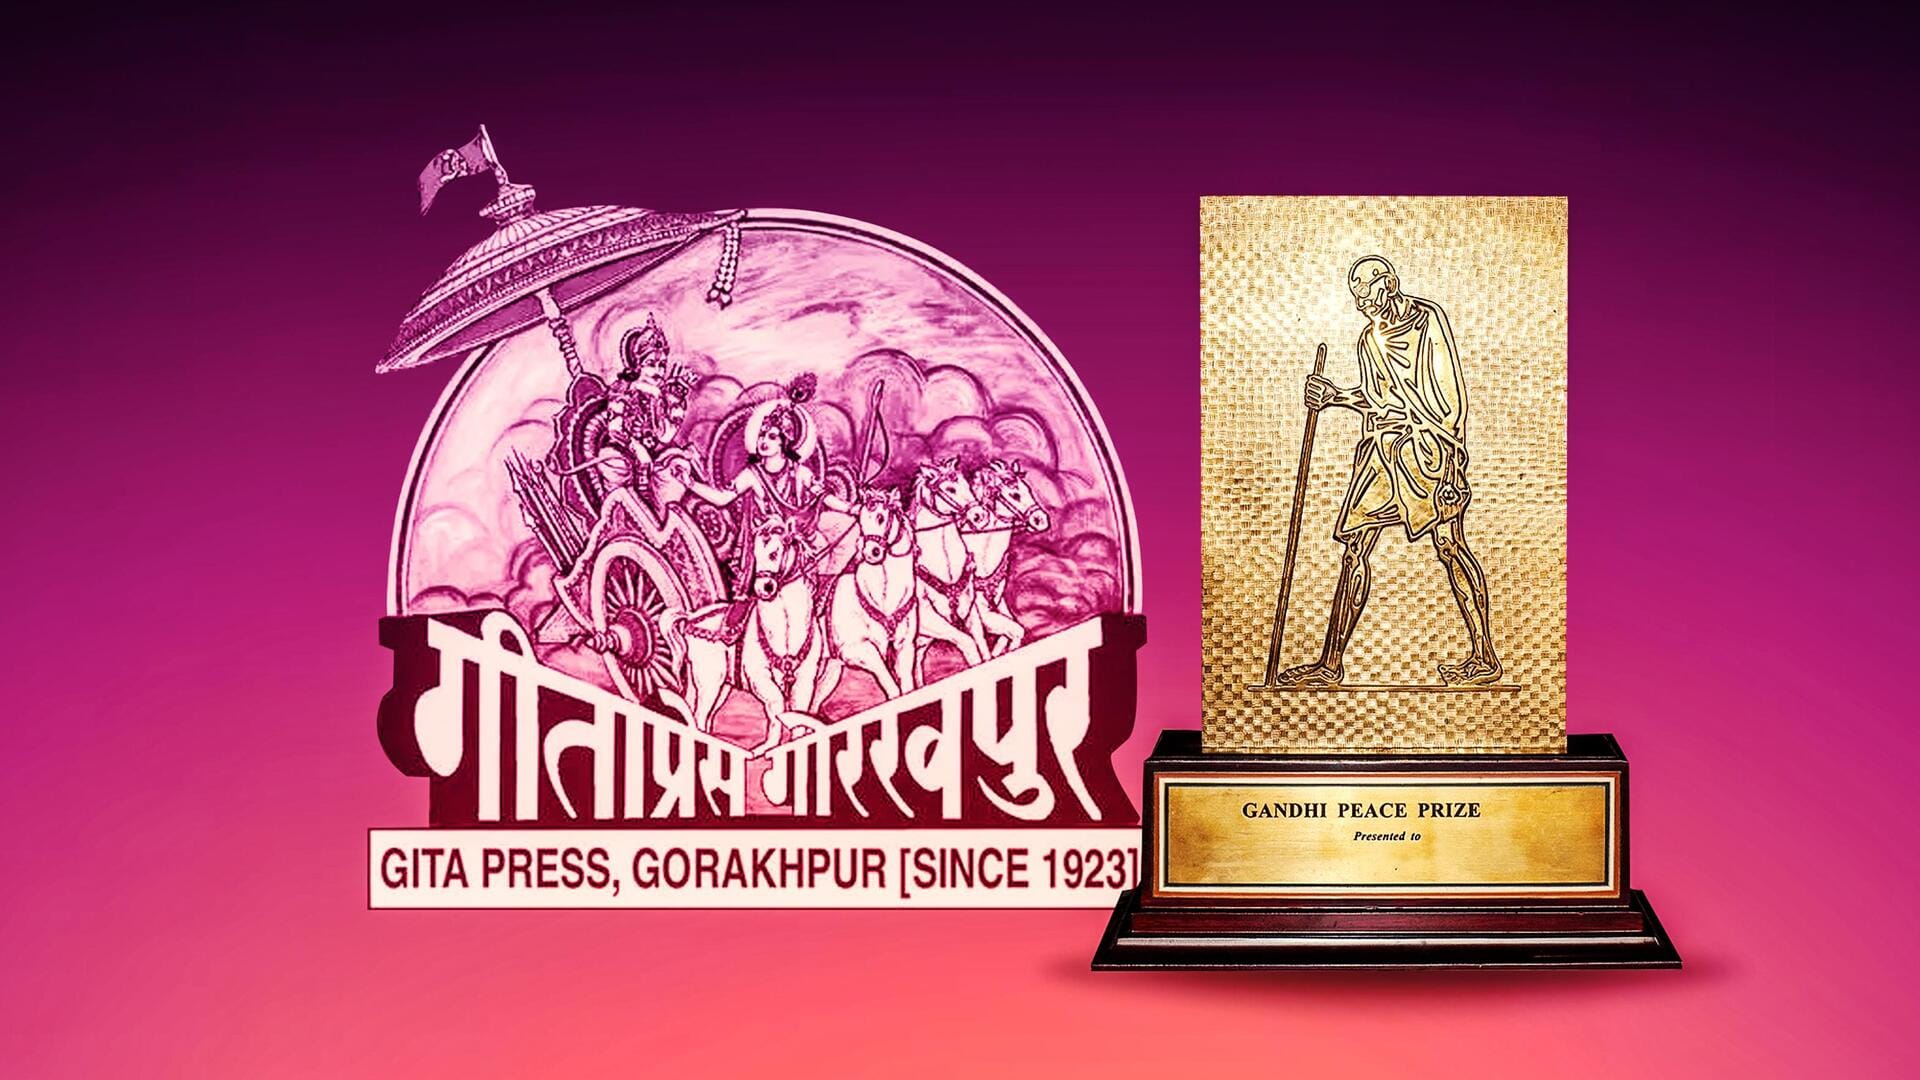 गीता प्रेस: हिंदू ग्रंथों की सबसे बड़ी प्रकाशक, जिसने 100 साल में छापीं करोड़ों धार्मिक किताबें 